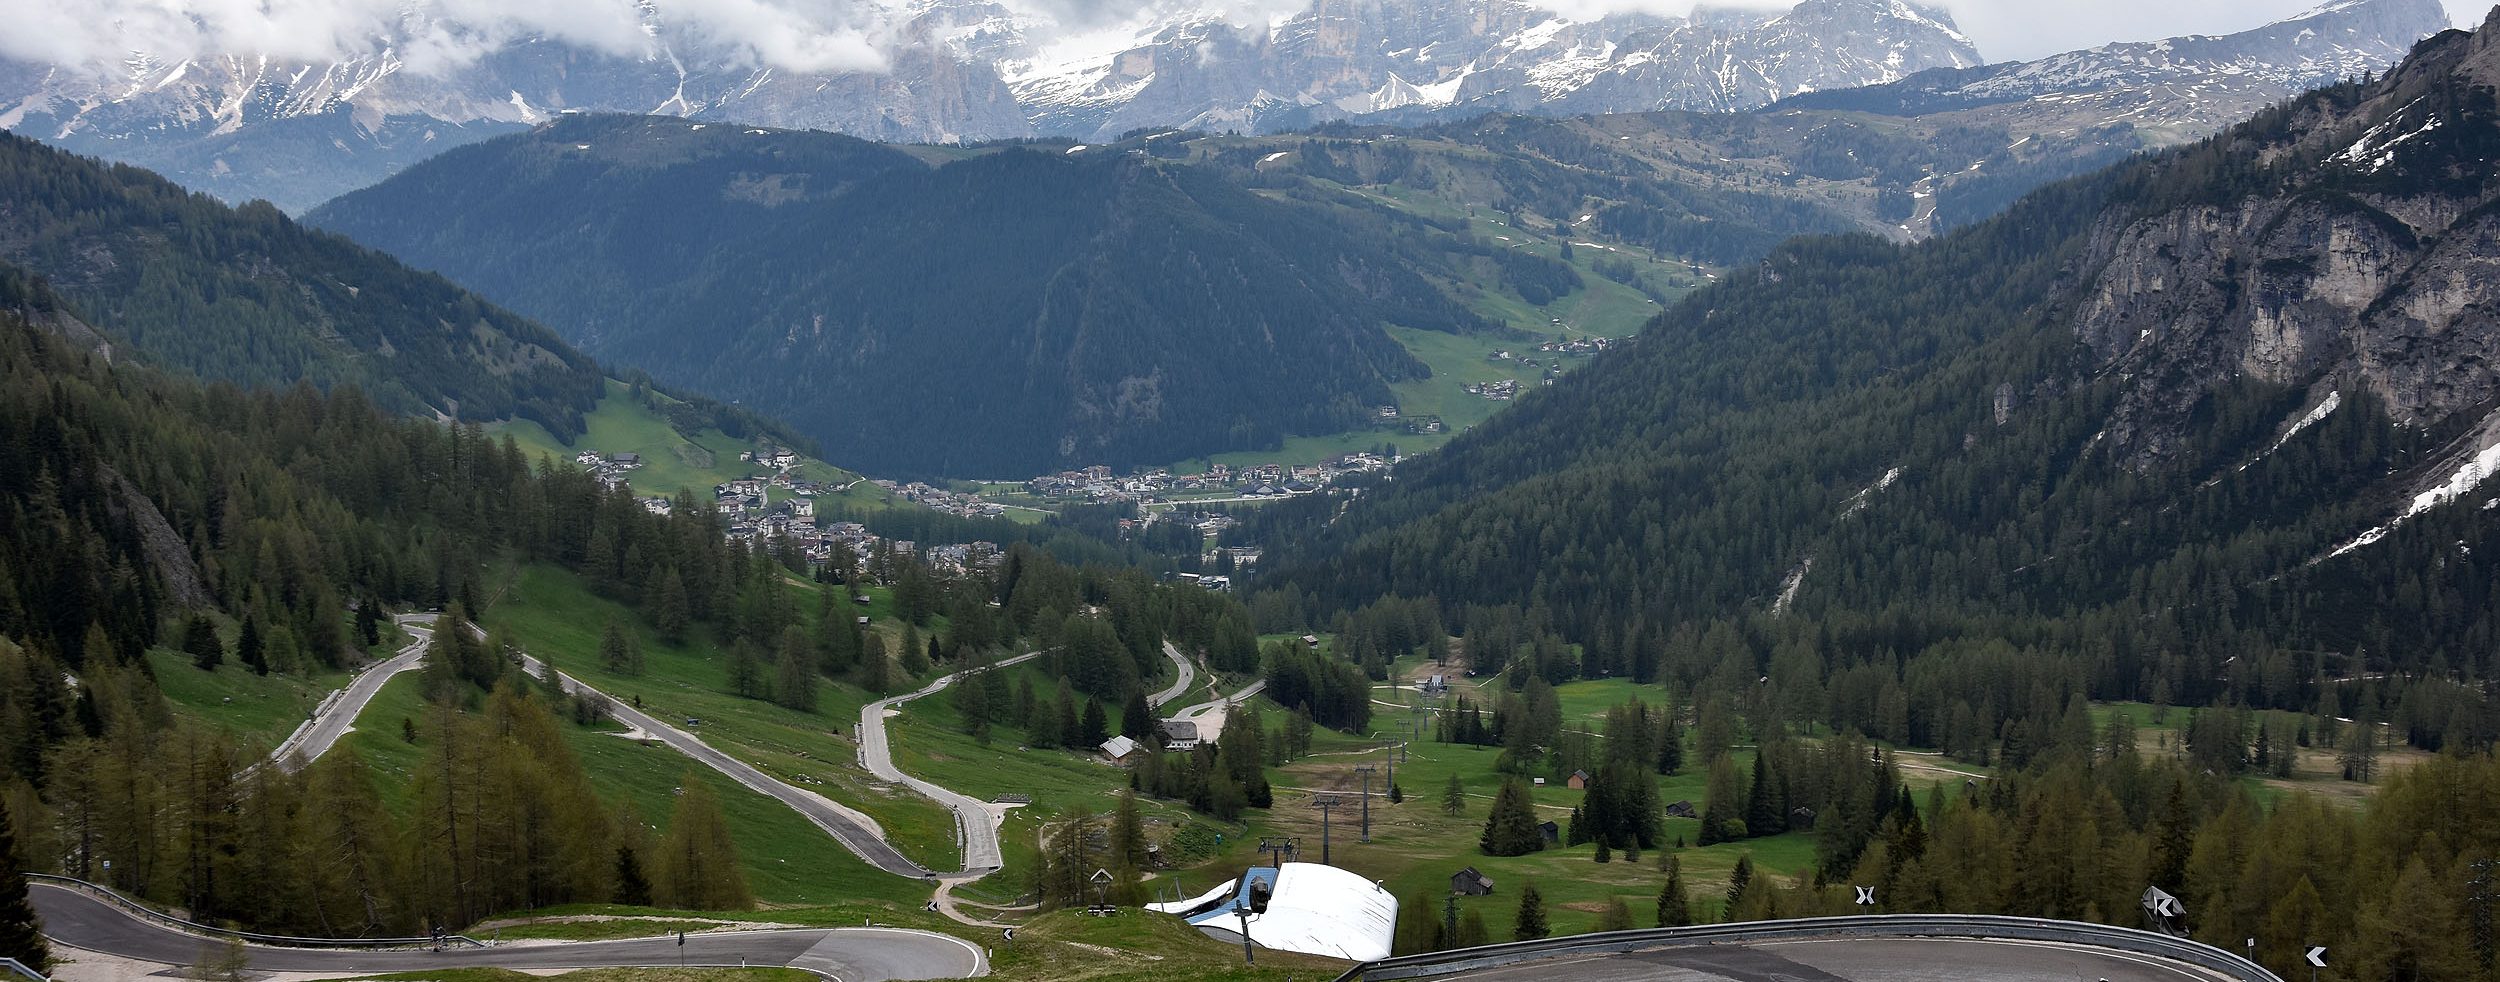 18 Mit Dem Wohnmobil Durch Sudtirol Die Weltenbummler